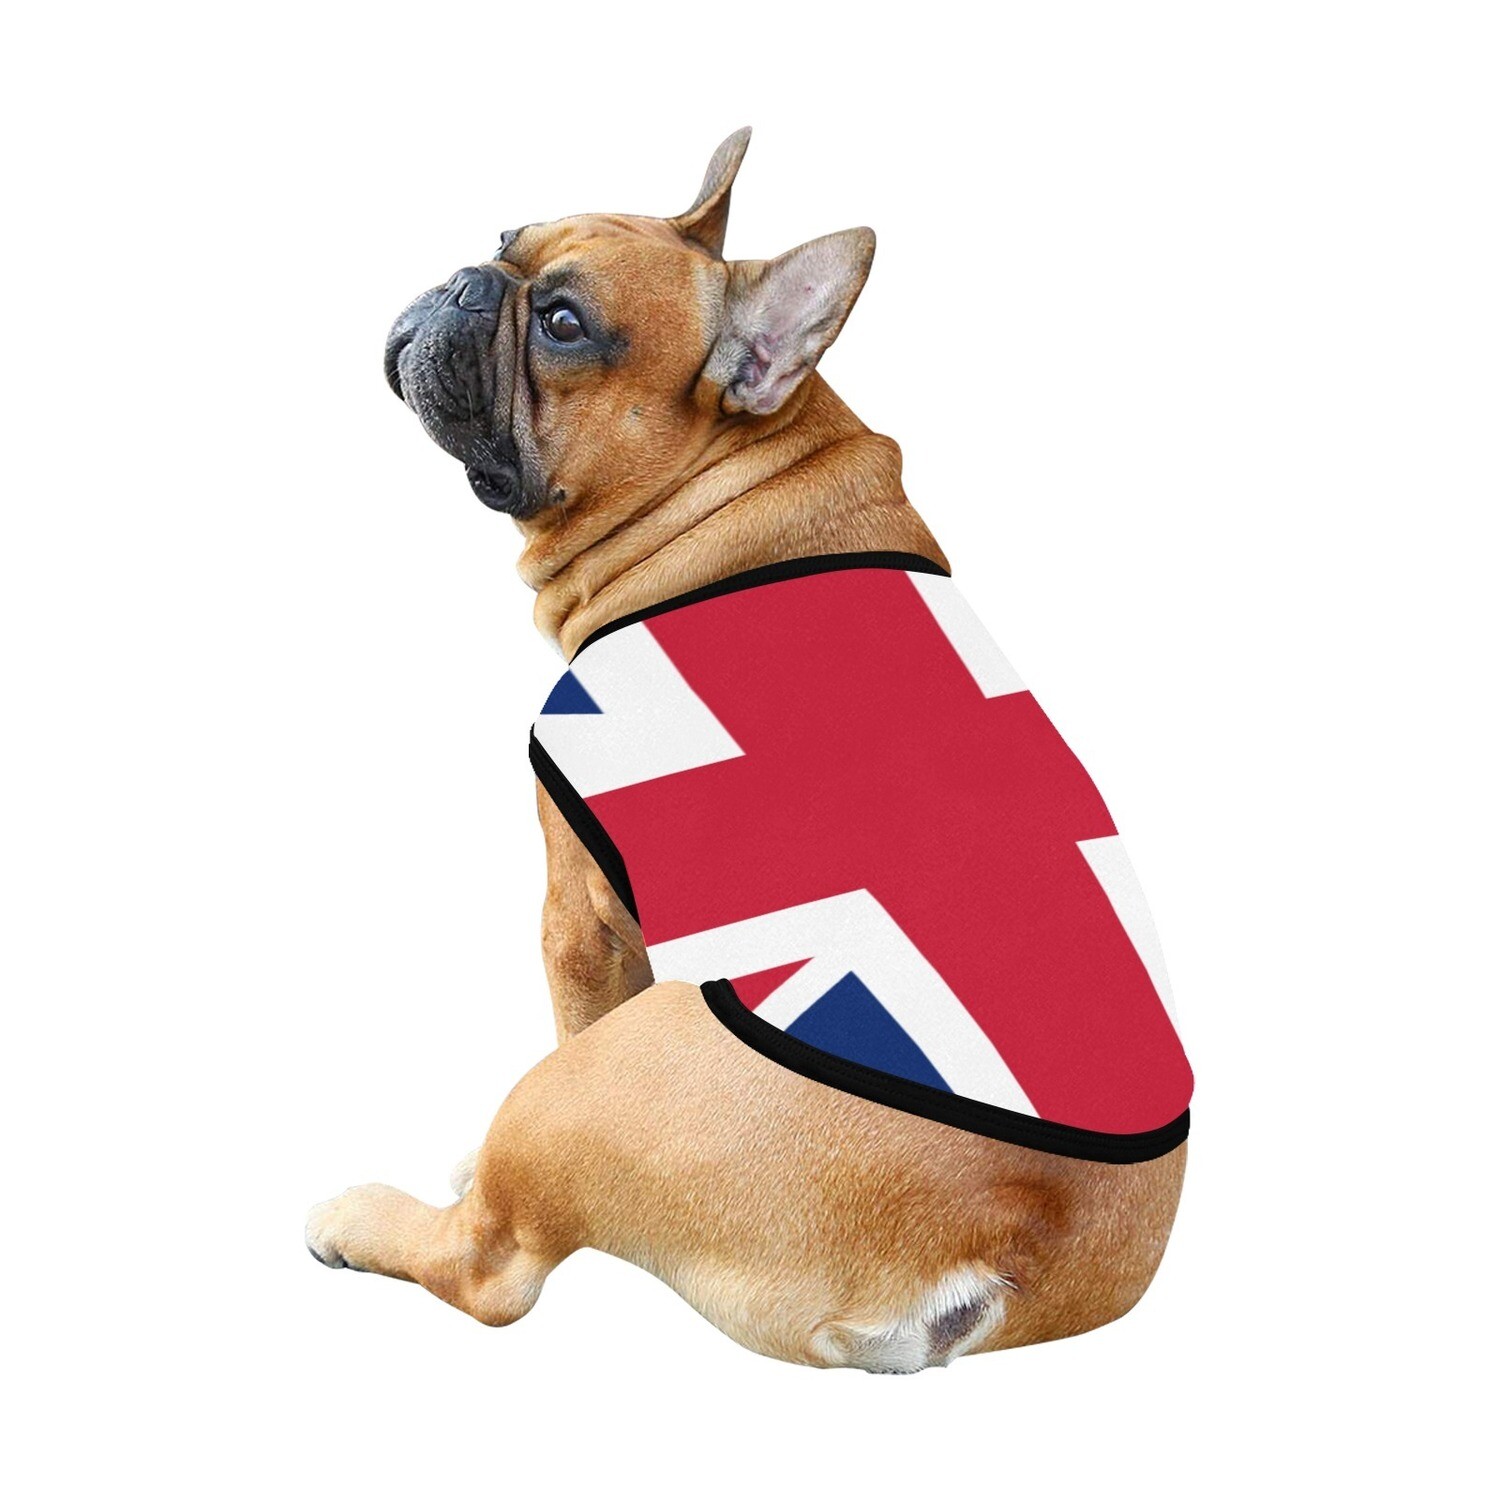 🐕🇬🇧 I love United Kingdom, Big Union Jack flag, dog t-shirt, dog gift, dog tank top, dog shirt, dog clothes, gift, 7 sizes XS to 3XL